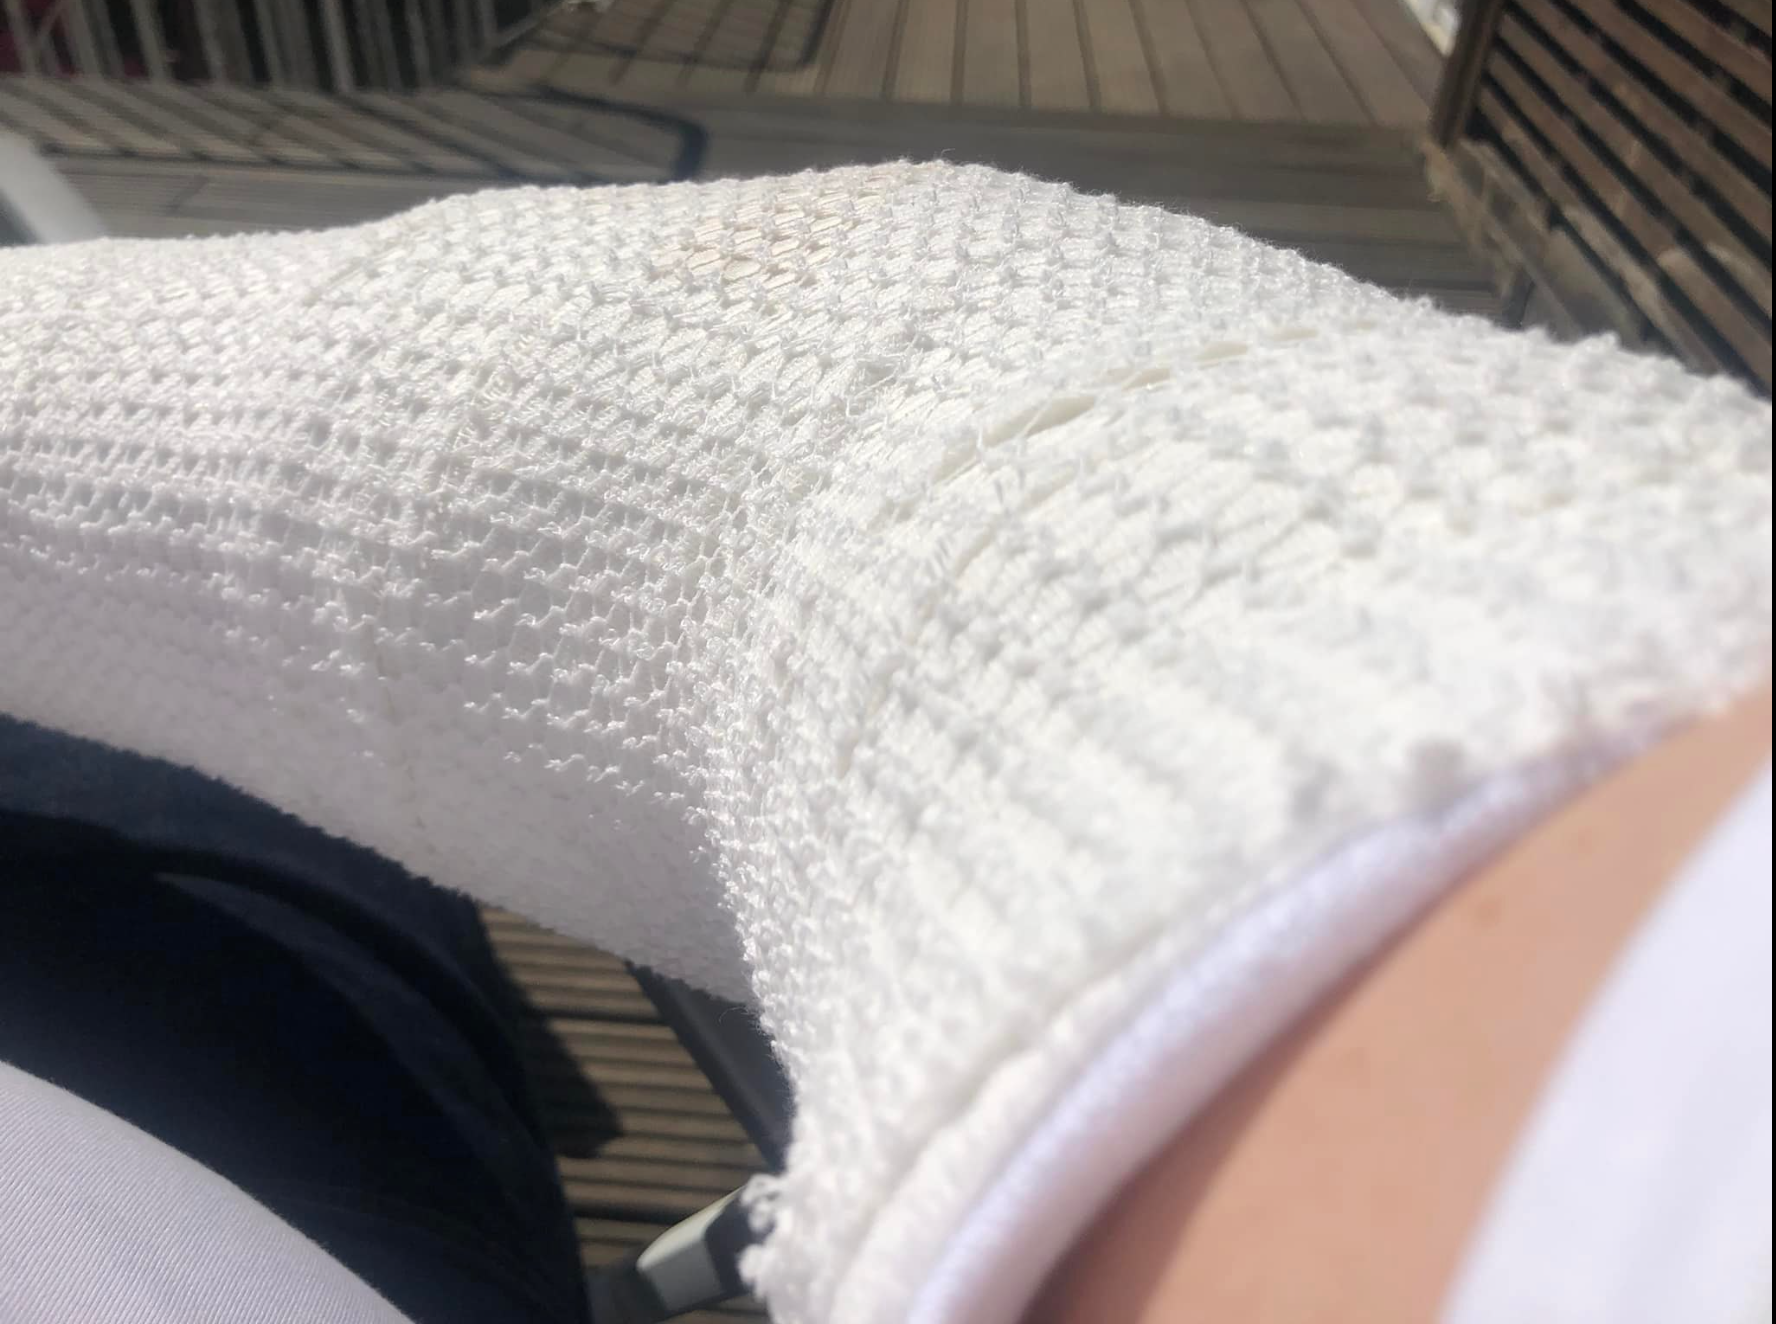 Am Sonntagnachmittag postete Jens Kerstan ein Bild von seinem verbundenen rechten Arm auf Facebook.